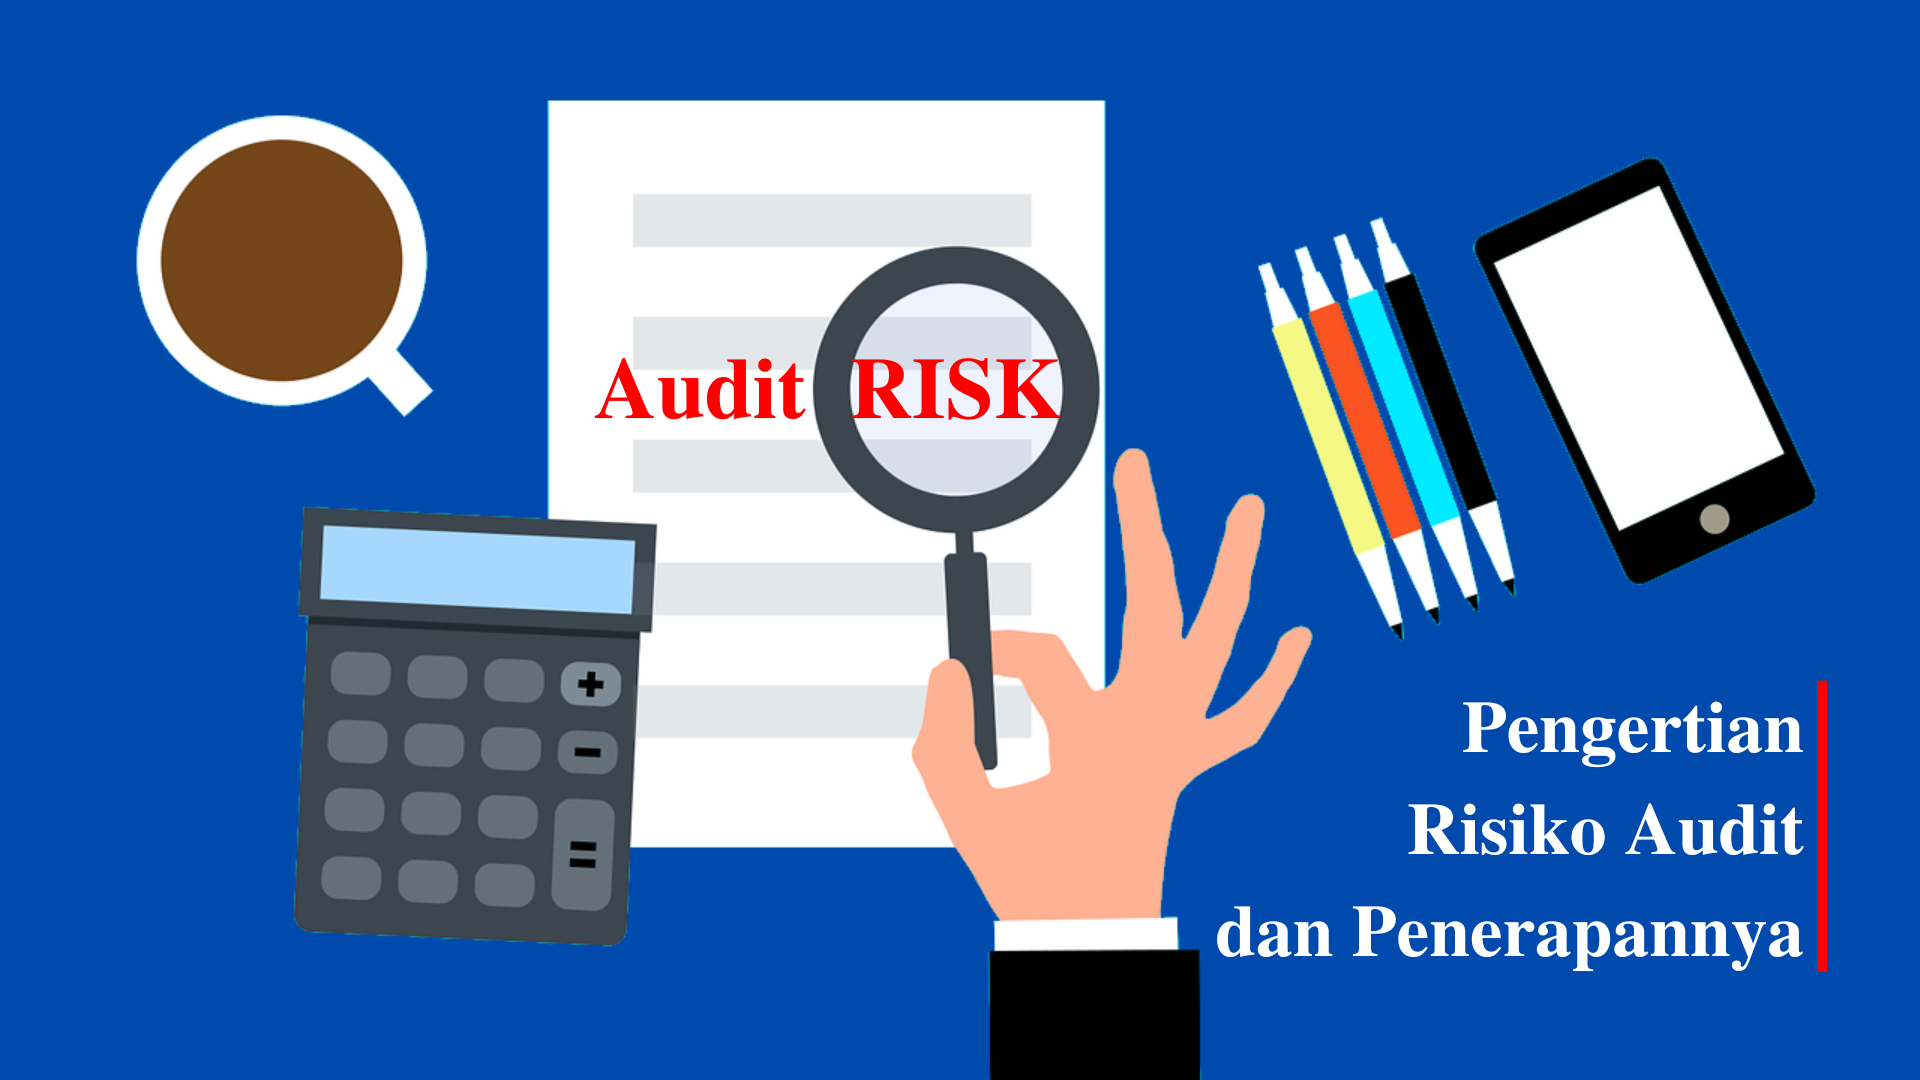 Pengertian Risiko Audit